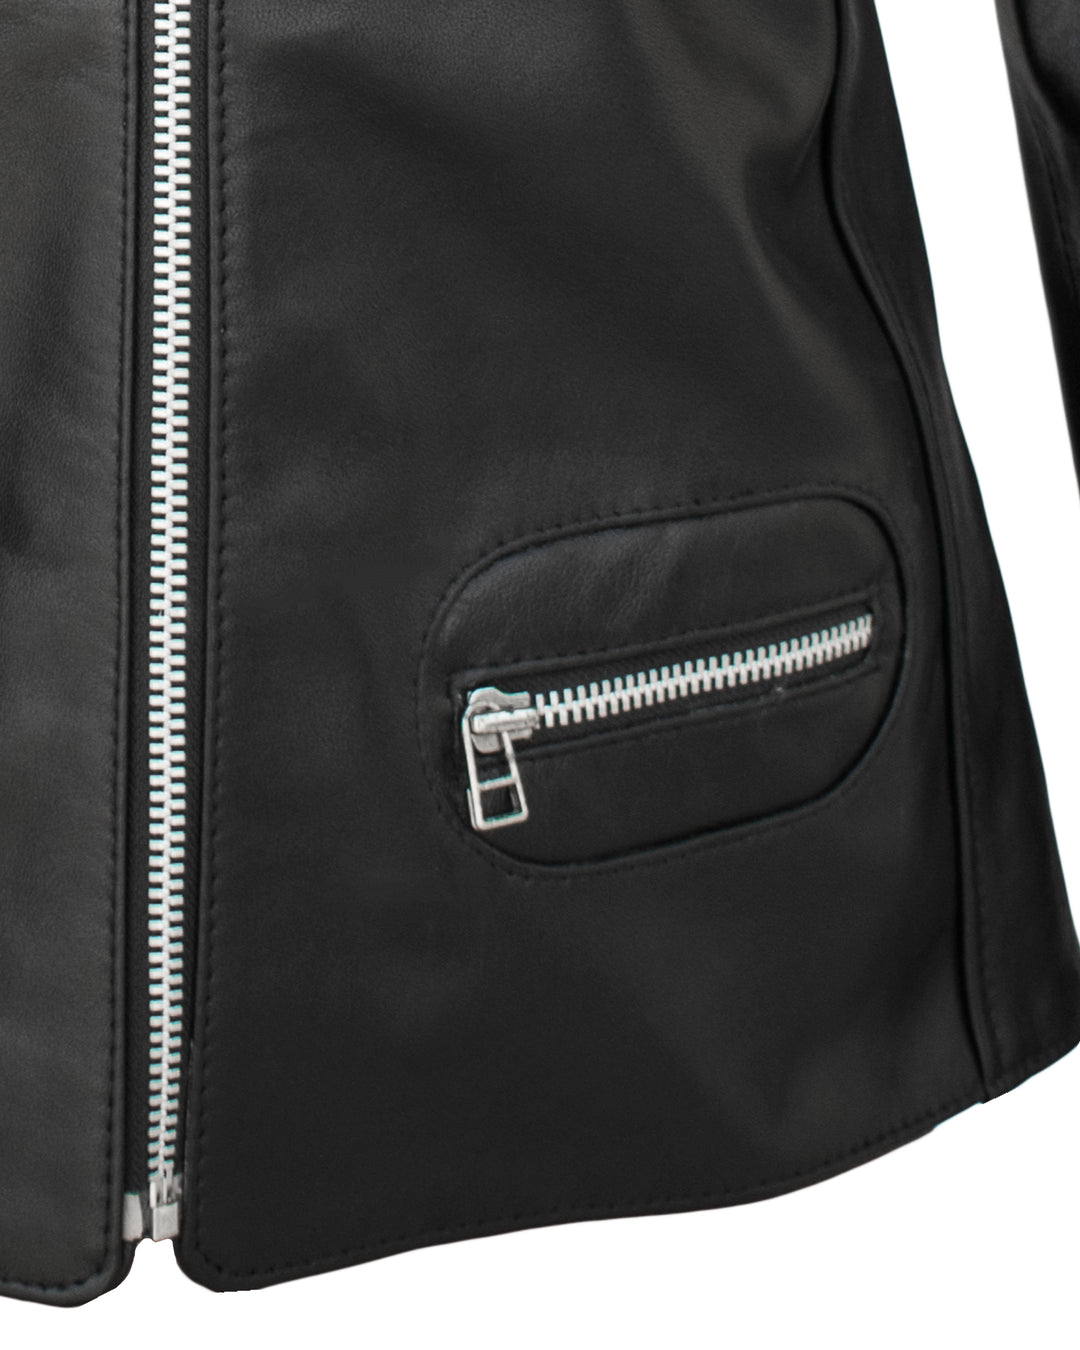 Lambskin Leather Jacket Online